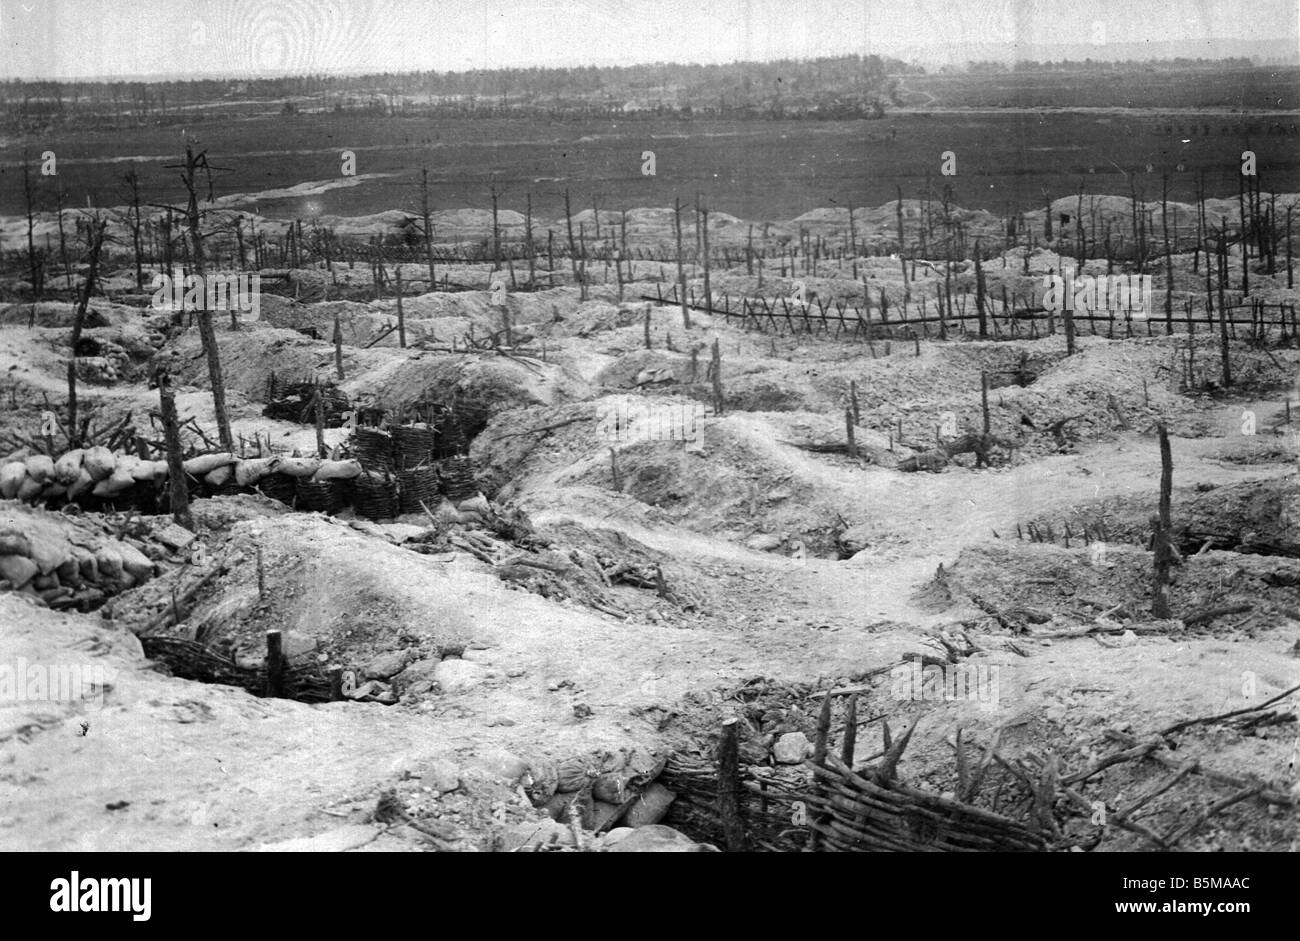 2 G55 W1 1915 21 E WWI posizioni tedesco a corona 1915 Storia WWI fronte occidentale tedesco posizioni nella foresta di Sabot dopo essere Foto Stock